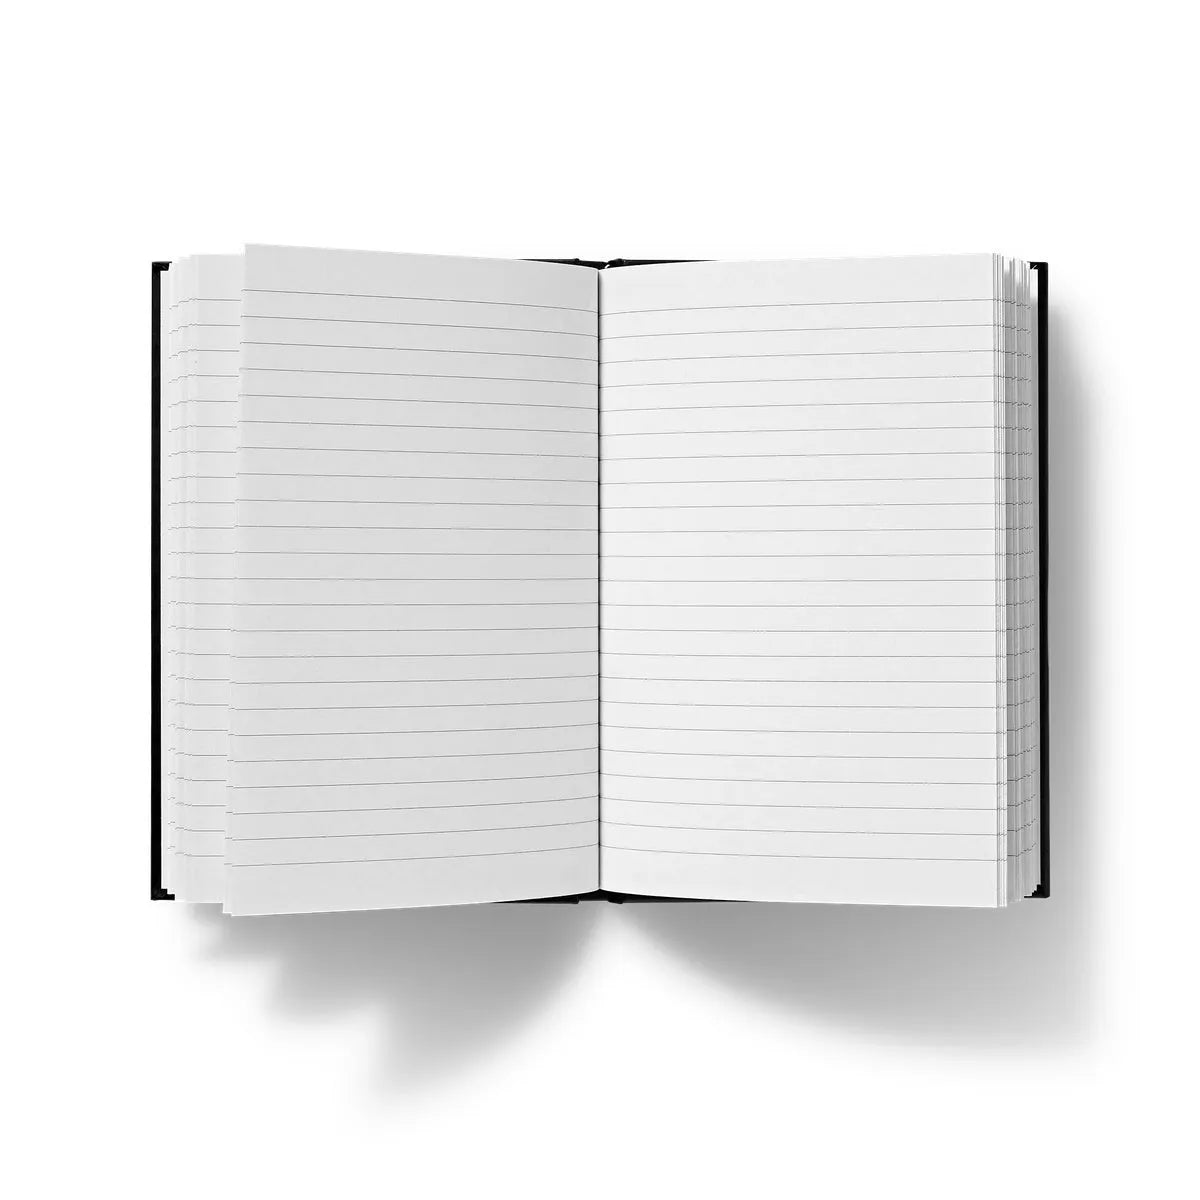 Sagittaire - Maurice Pillard Verneuil Hardback Journal - Notebooks & Notepads - Aesthetic Art